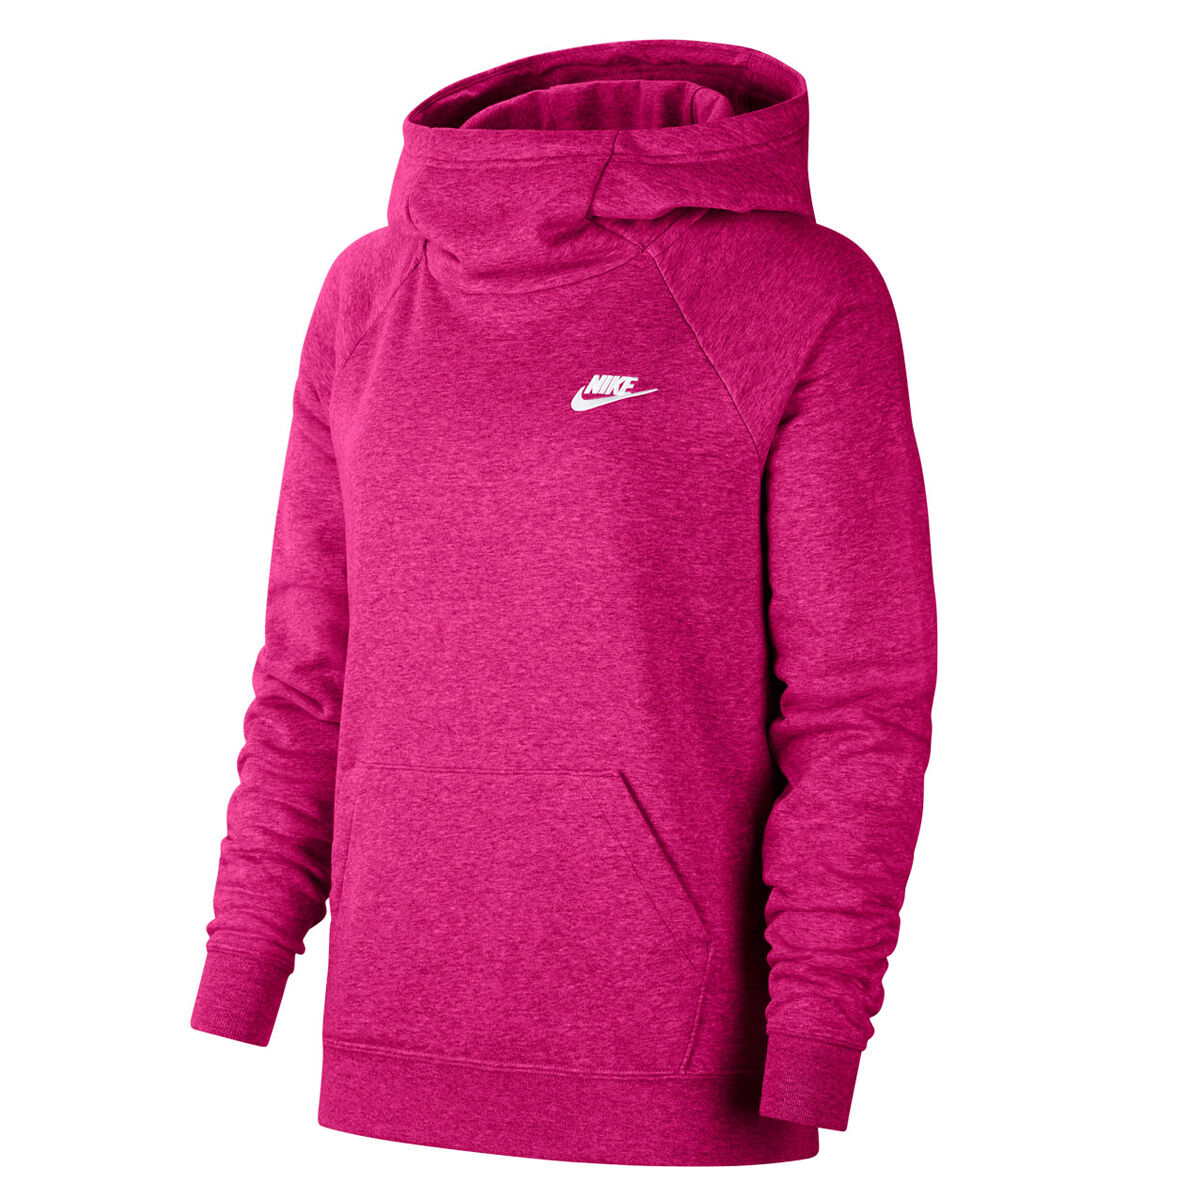 nike womens hoodie pink